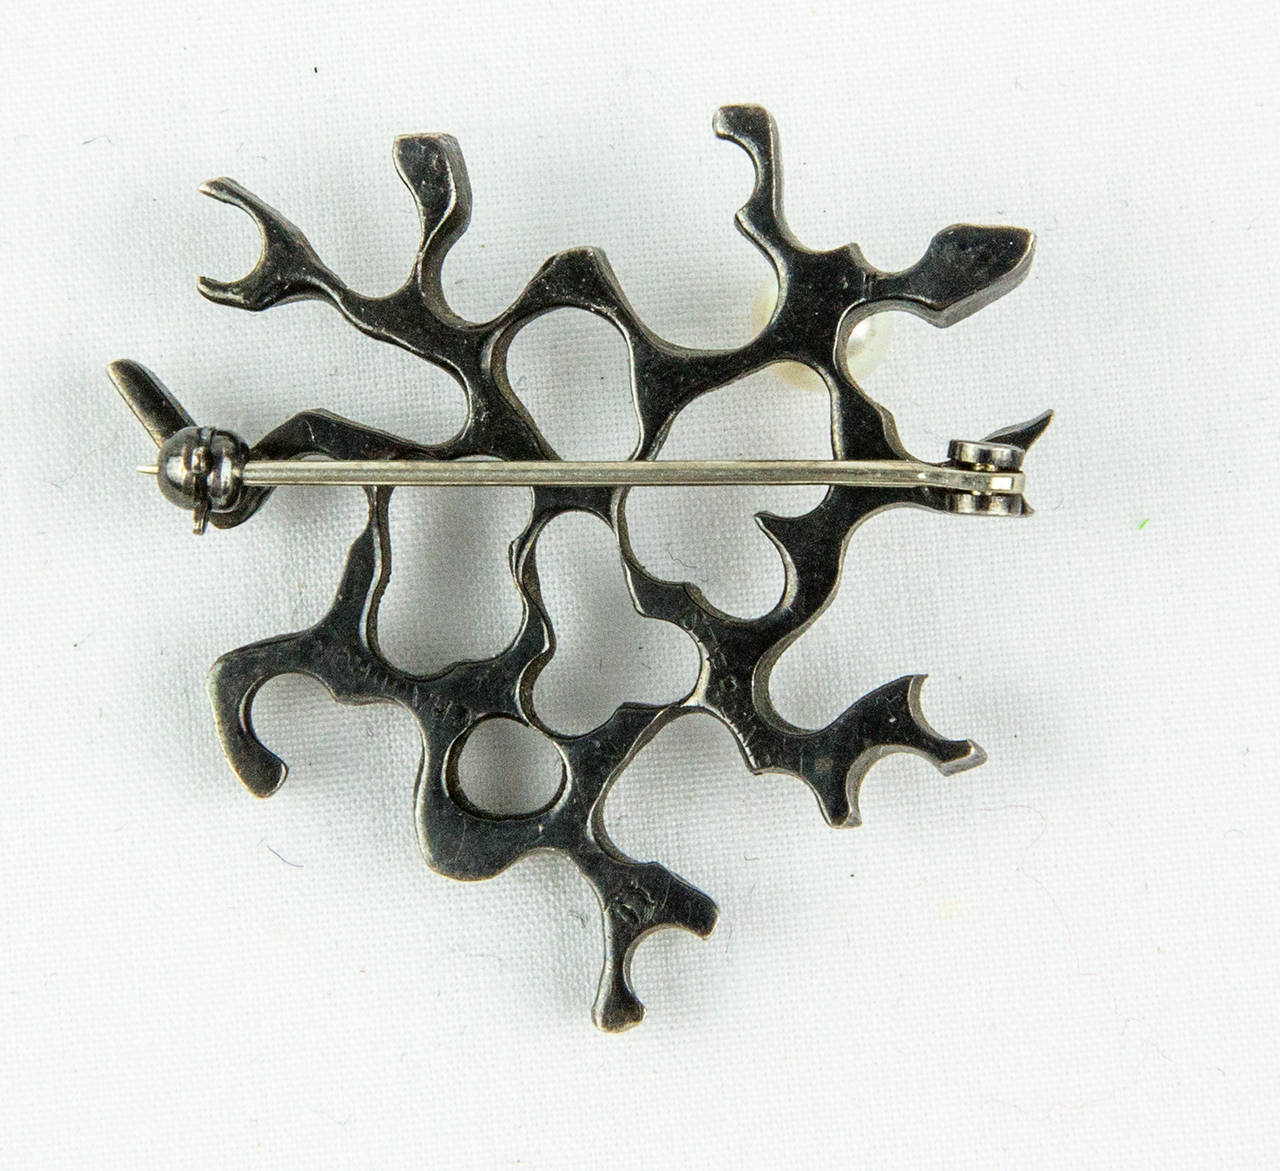 Paire de broches en argent sterling oxydé présentant un design ajouré Biomorphique et chaque broche sertie d'une perle.  Marqué : CHAUDRON et marque d'artiste ; taille approximative : 1,5